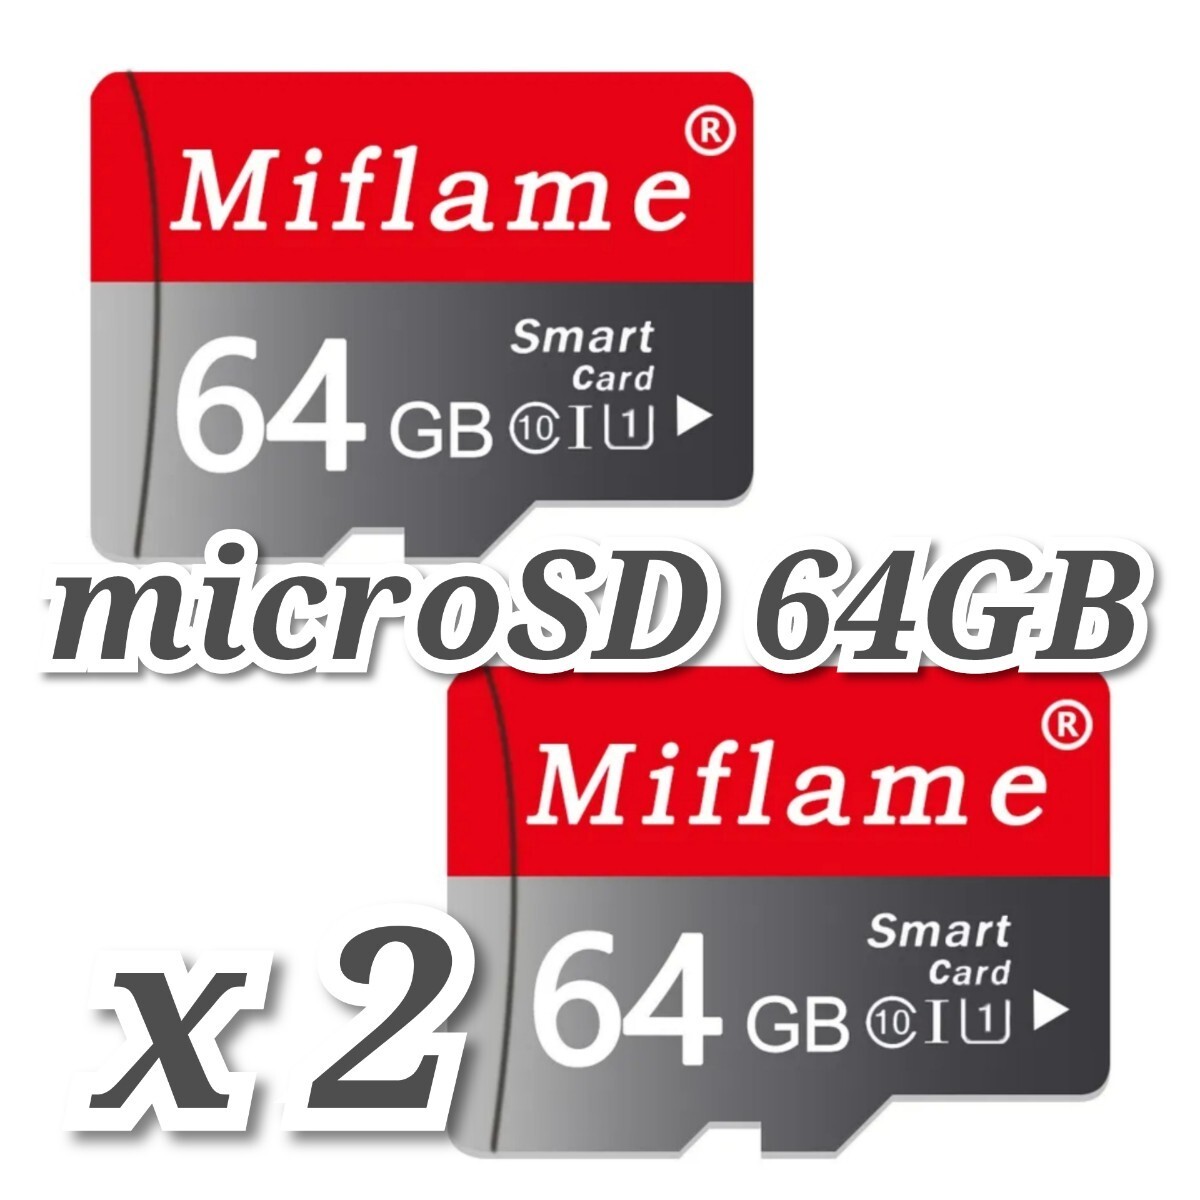 【送料無料】マイクロSDカード 64GB 2枚 class10 2個 microSD microSDXC マイクロSD 高速 MIFLAME 64GB RED-GRAYの画像2